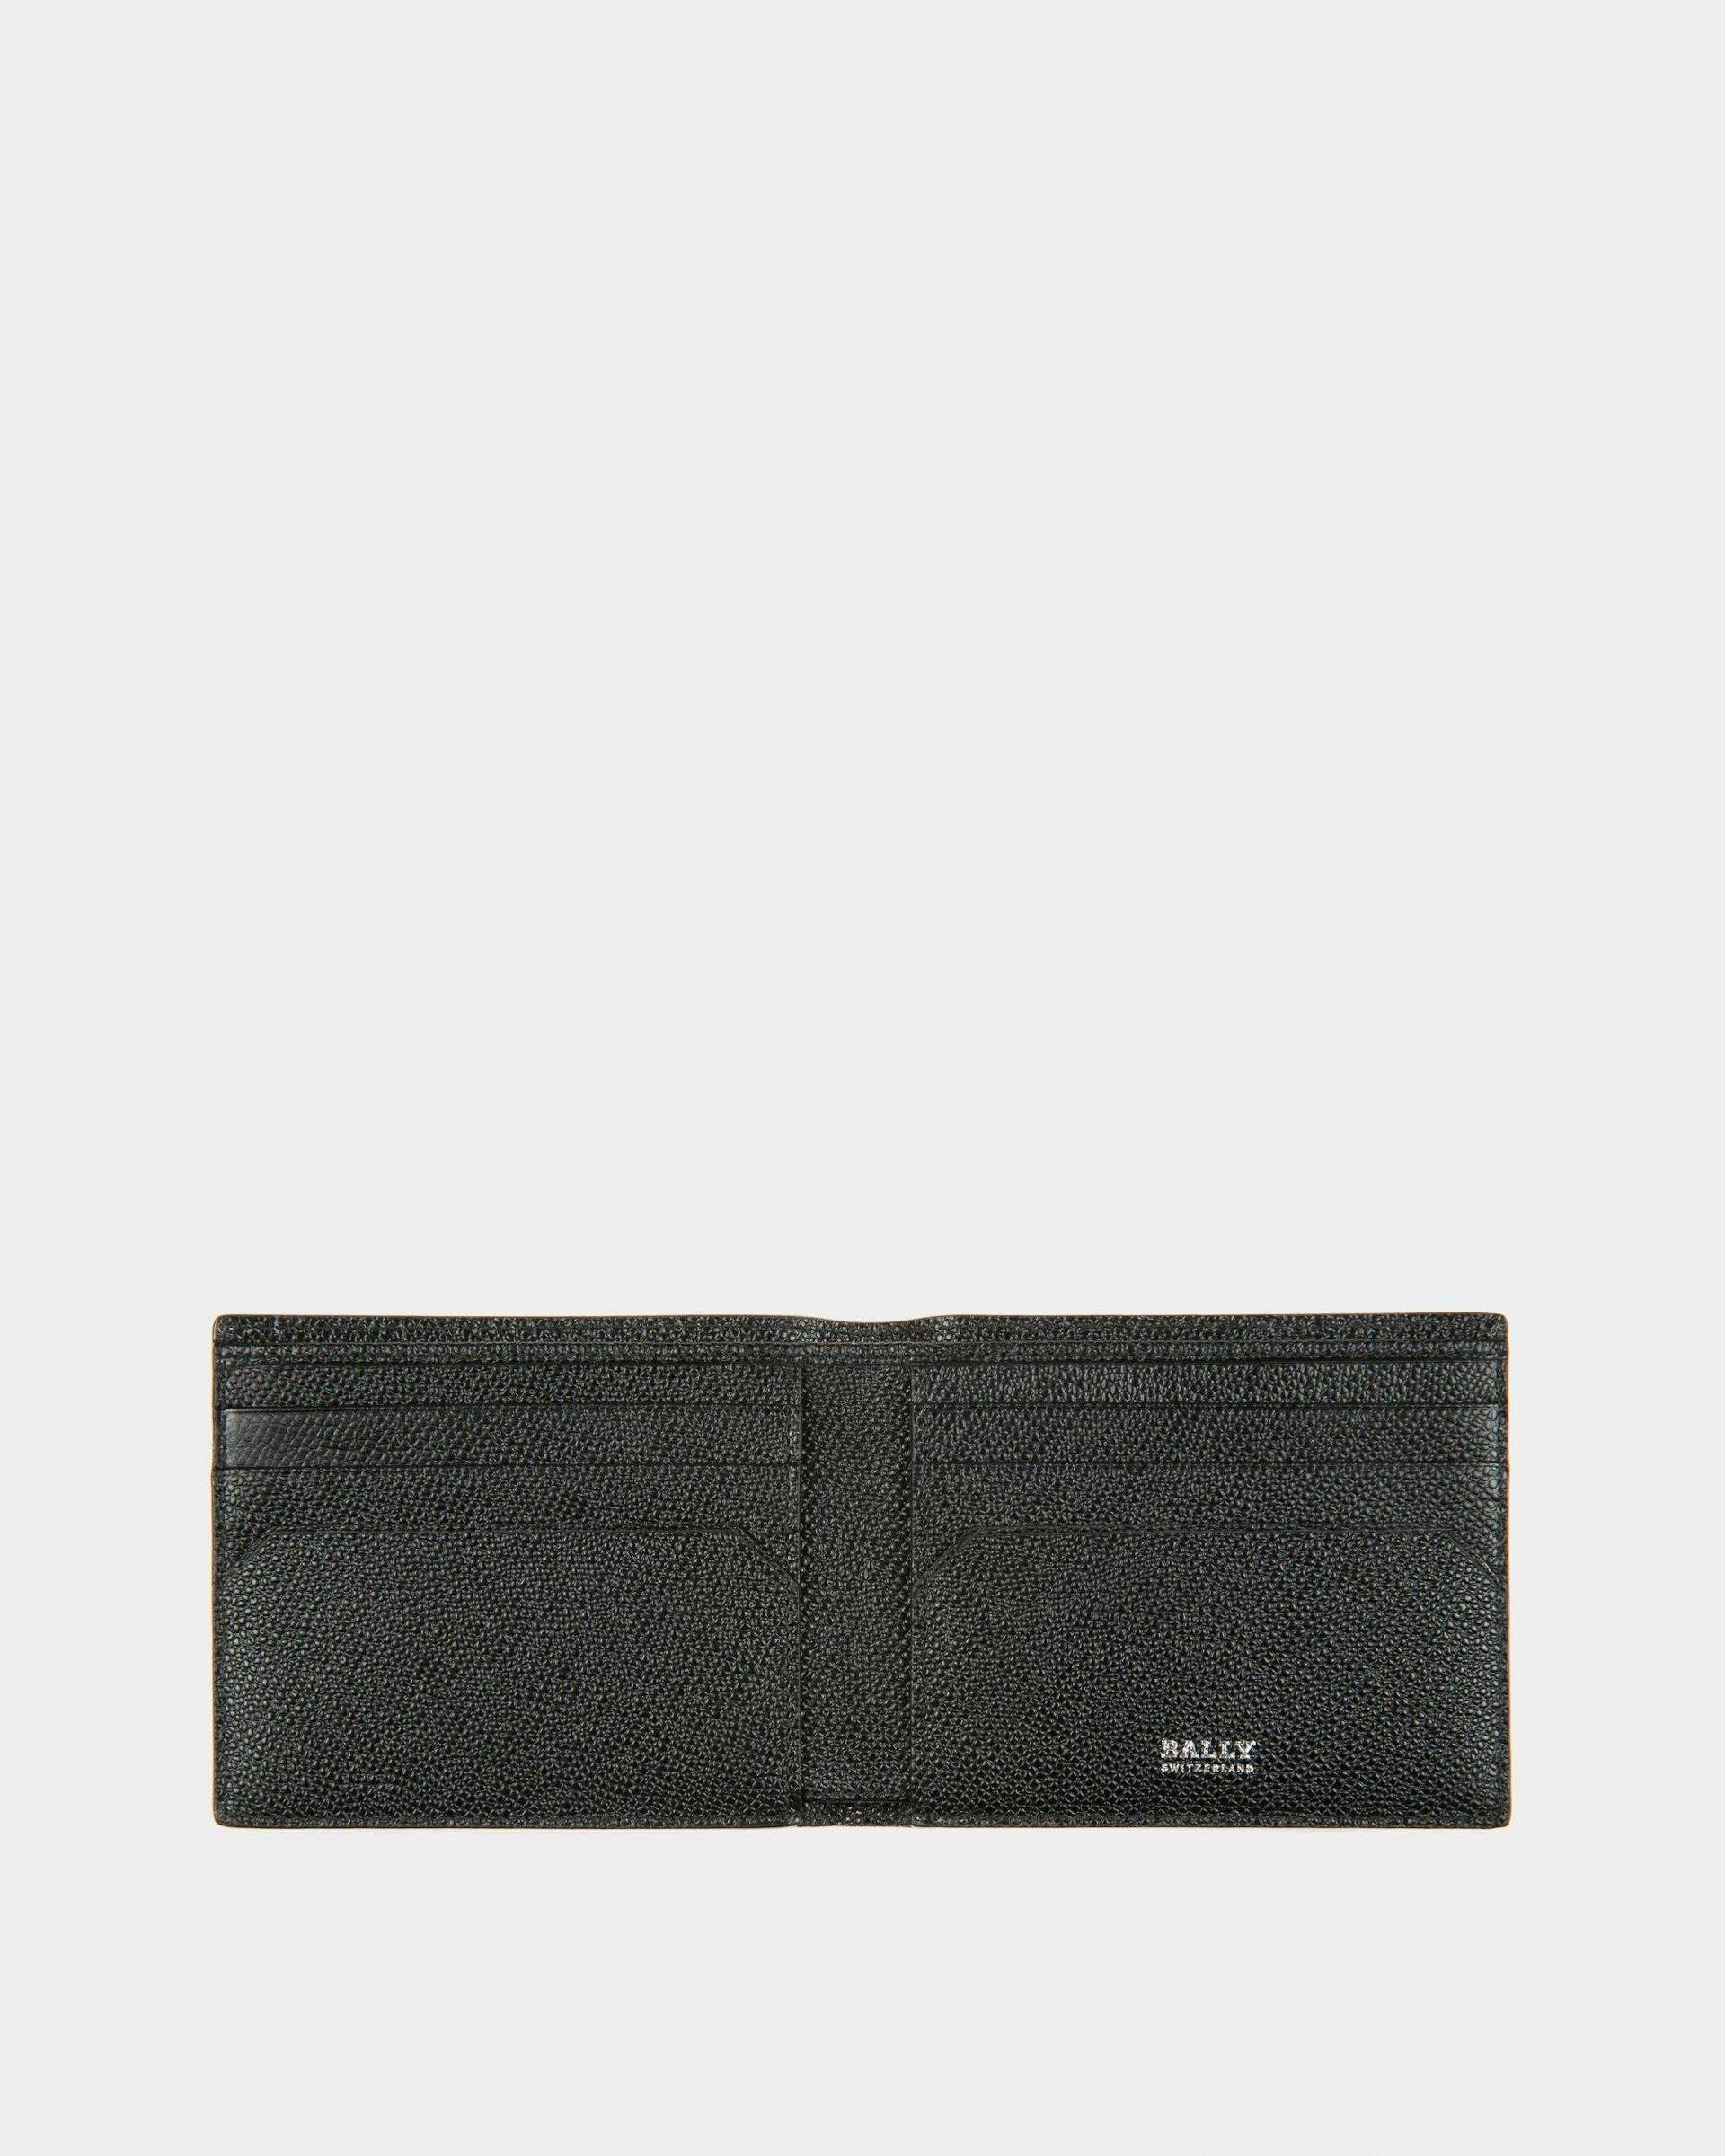 Men's Trasai Leather Wallet In Black | Bally | Still Life Open / Inside